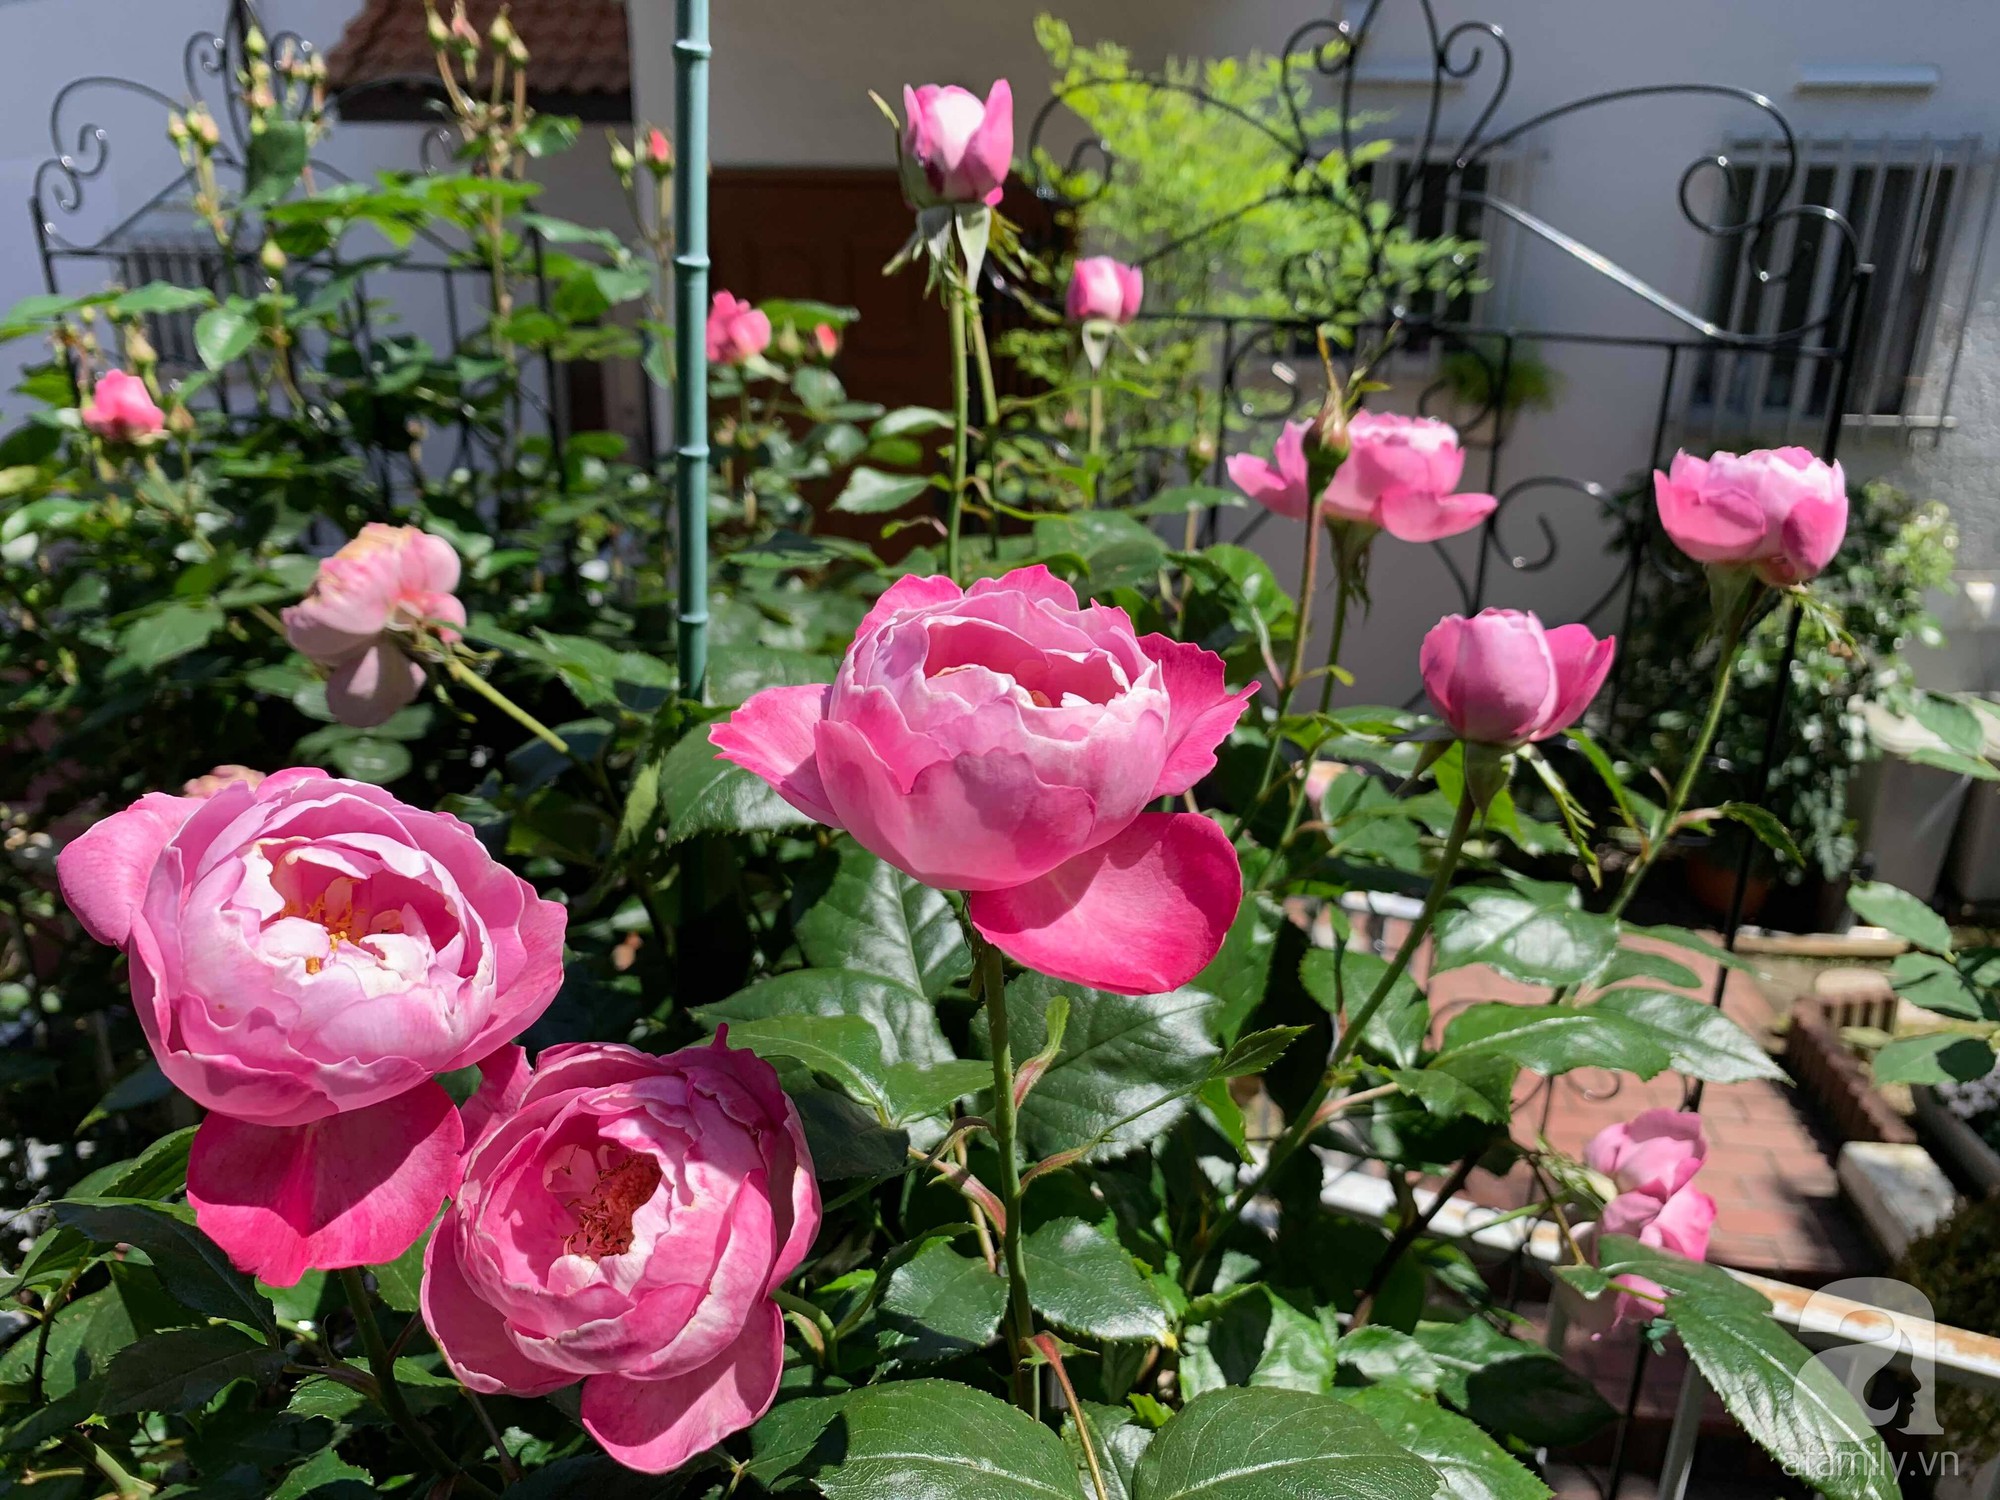 Góc vườn 20m² thơm ngát hoa hồng đủ loại của nữ giám đốc Việt ở Nhật Bản - Ảnh 17.